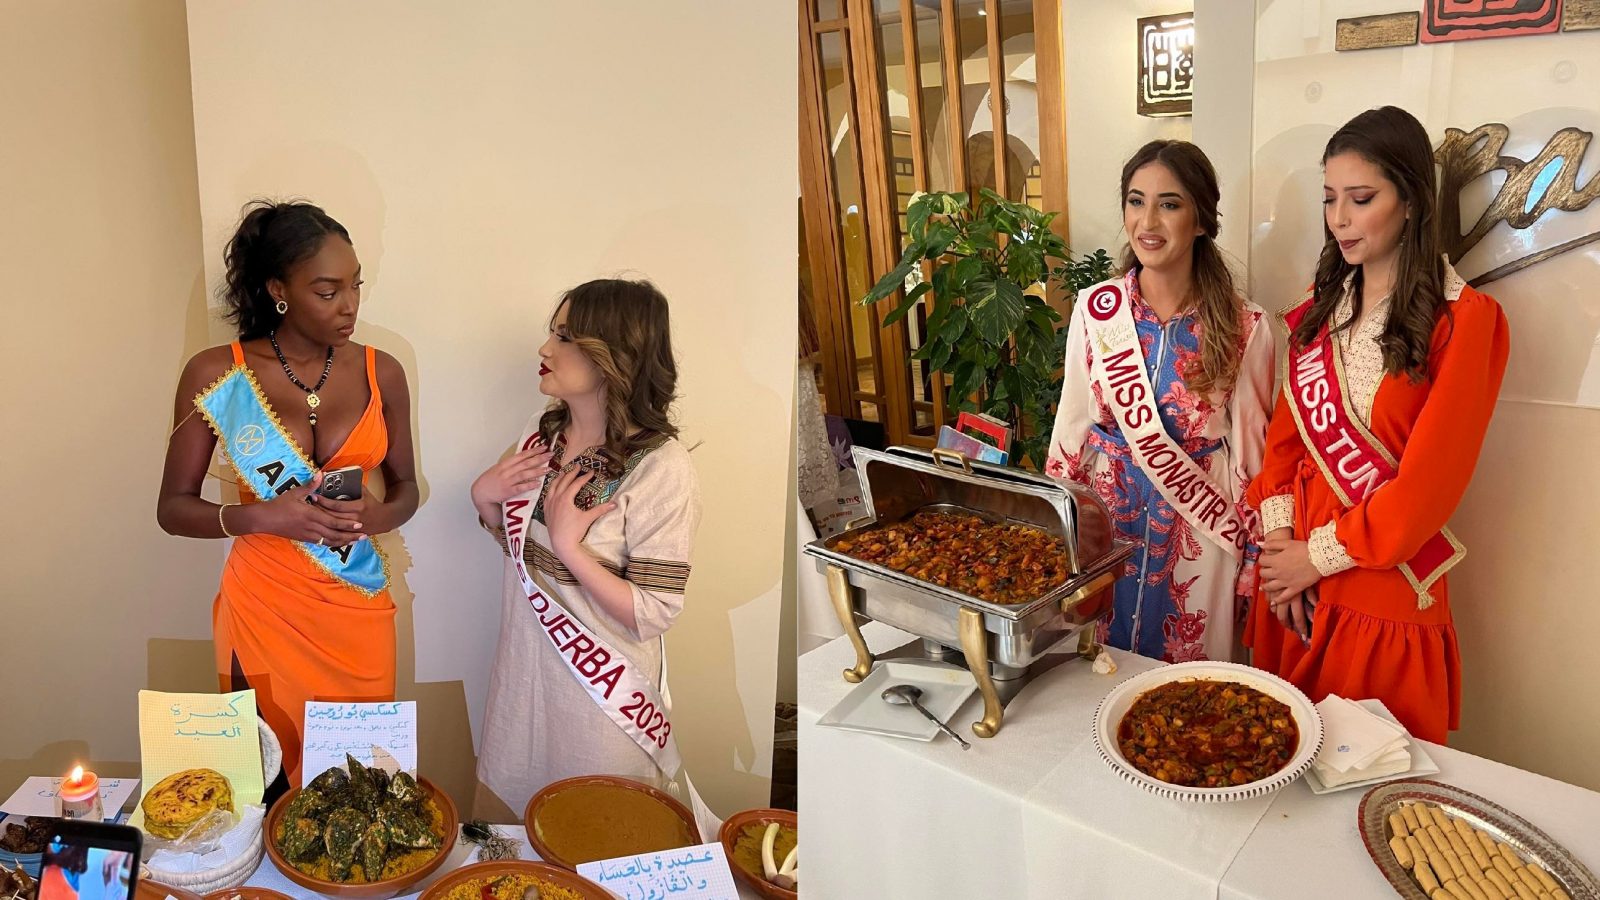 المرشحات لملكة جمال تونس يعرضن أكلات جهاتهنّ (فيديوهات)